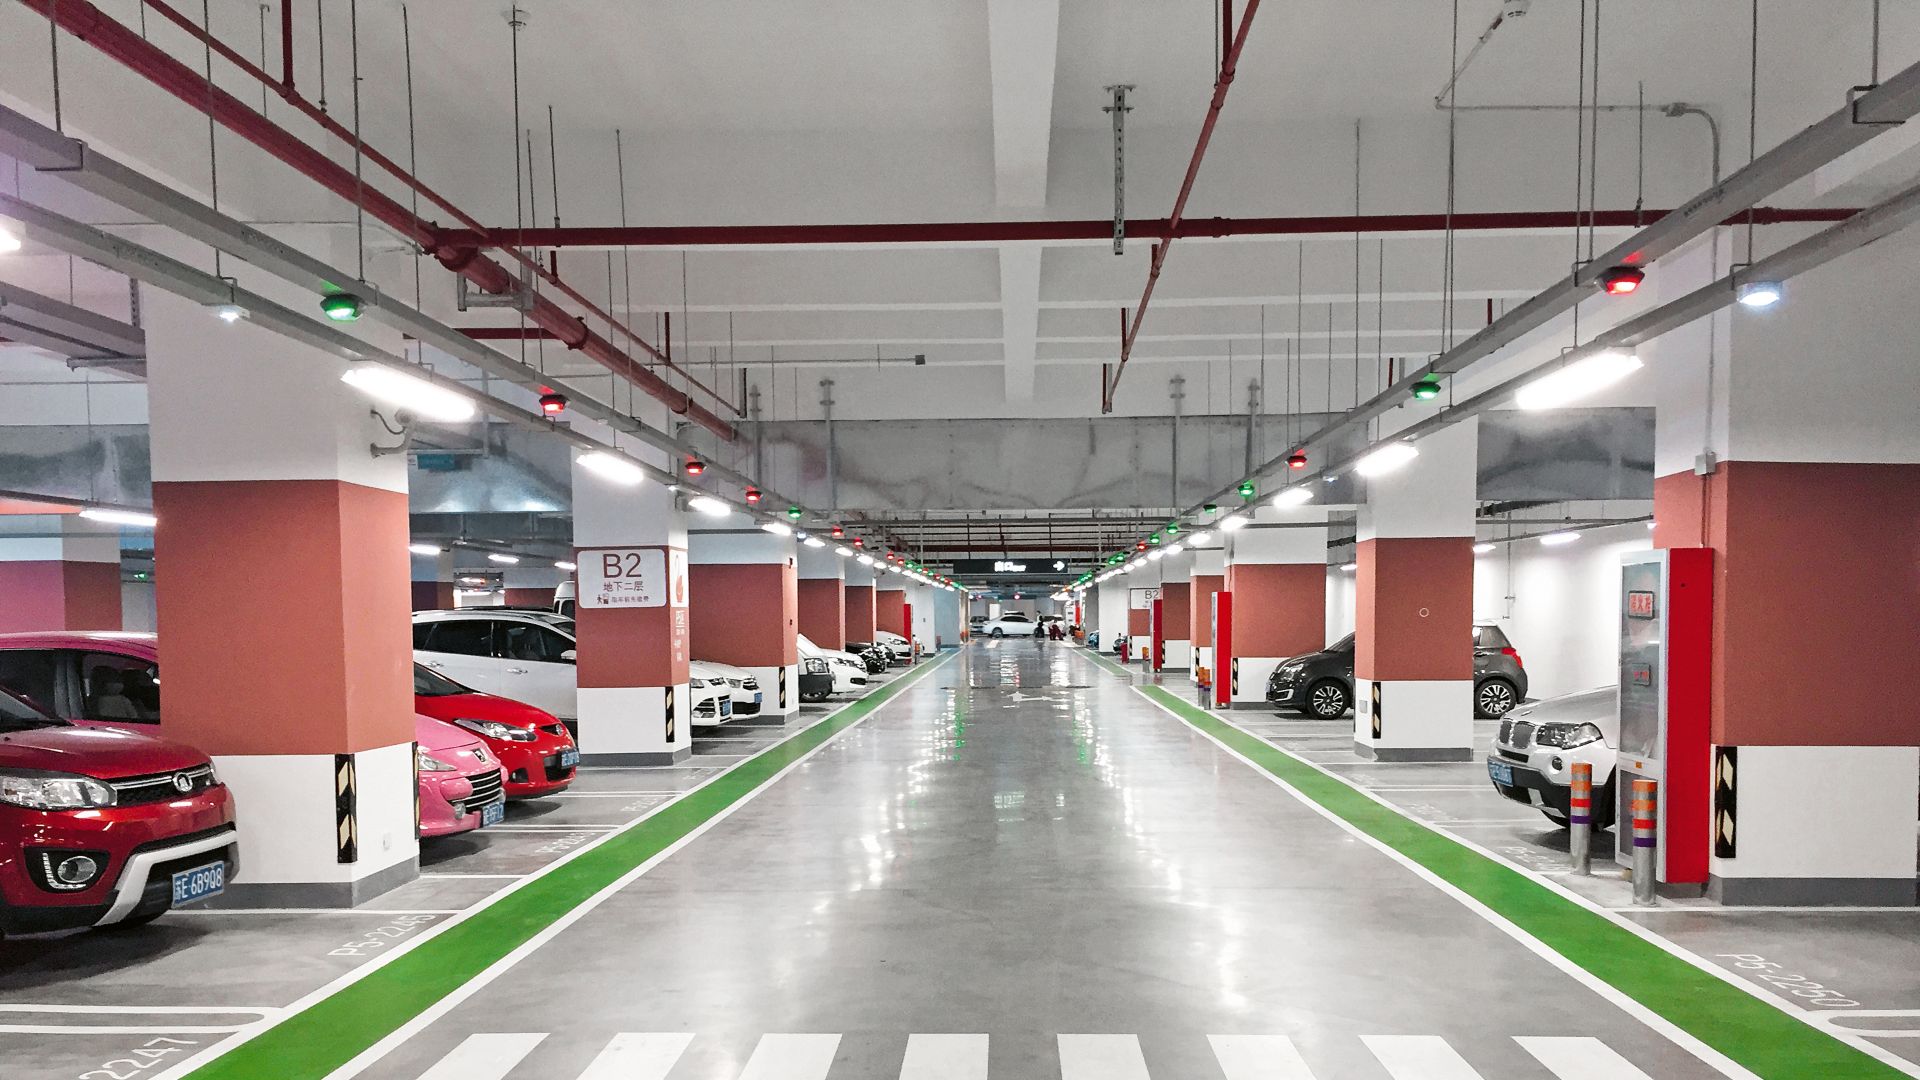 Parking garage in China